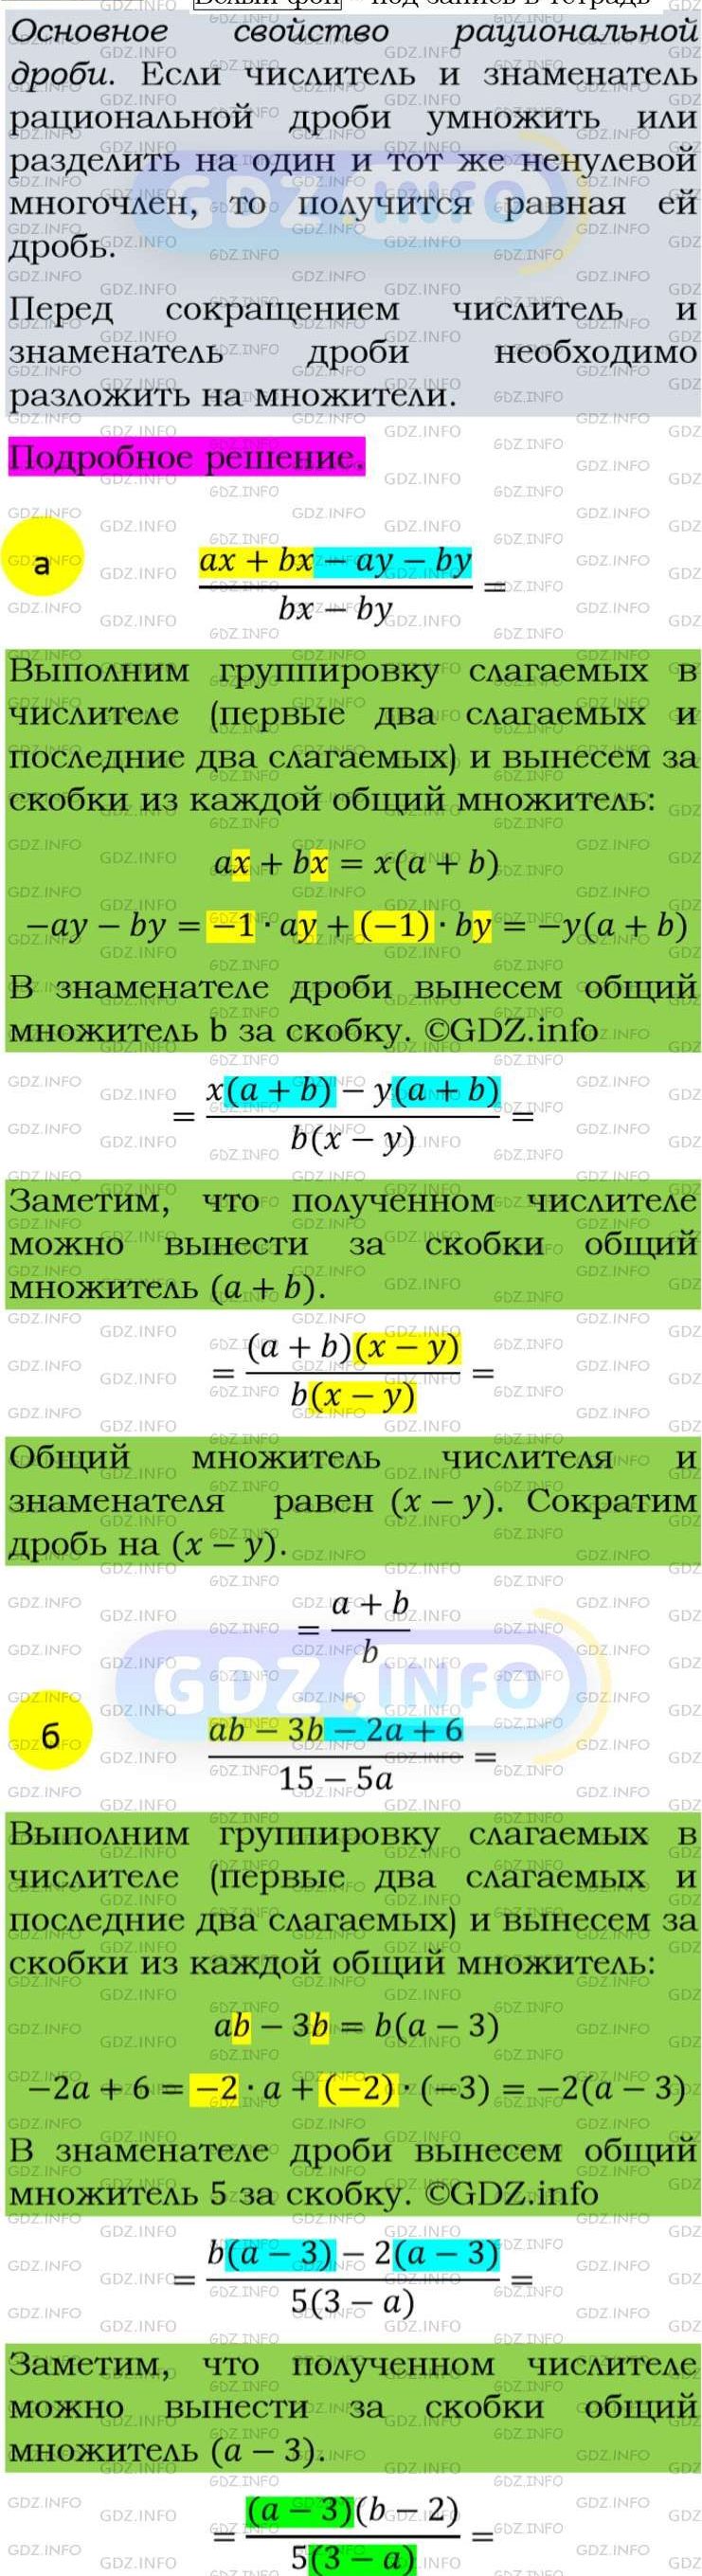 Фото подробного решения: Номер задания №43 из ГДЗ по Алгебре 8 класс: Макарычев Ю.Н.